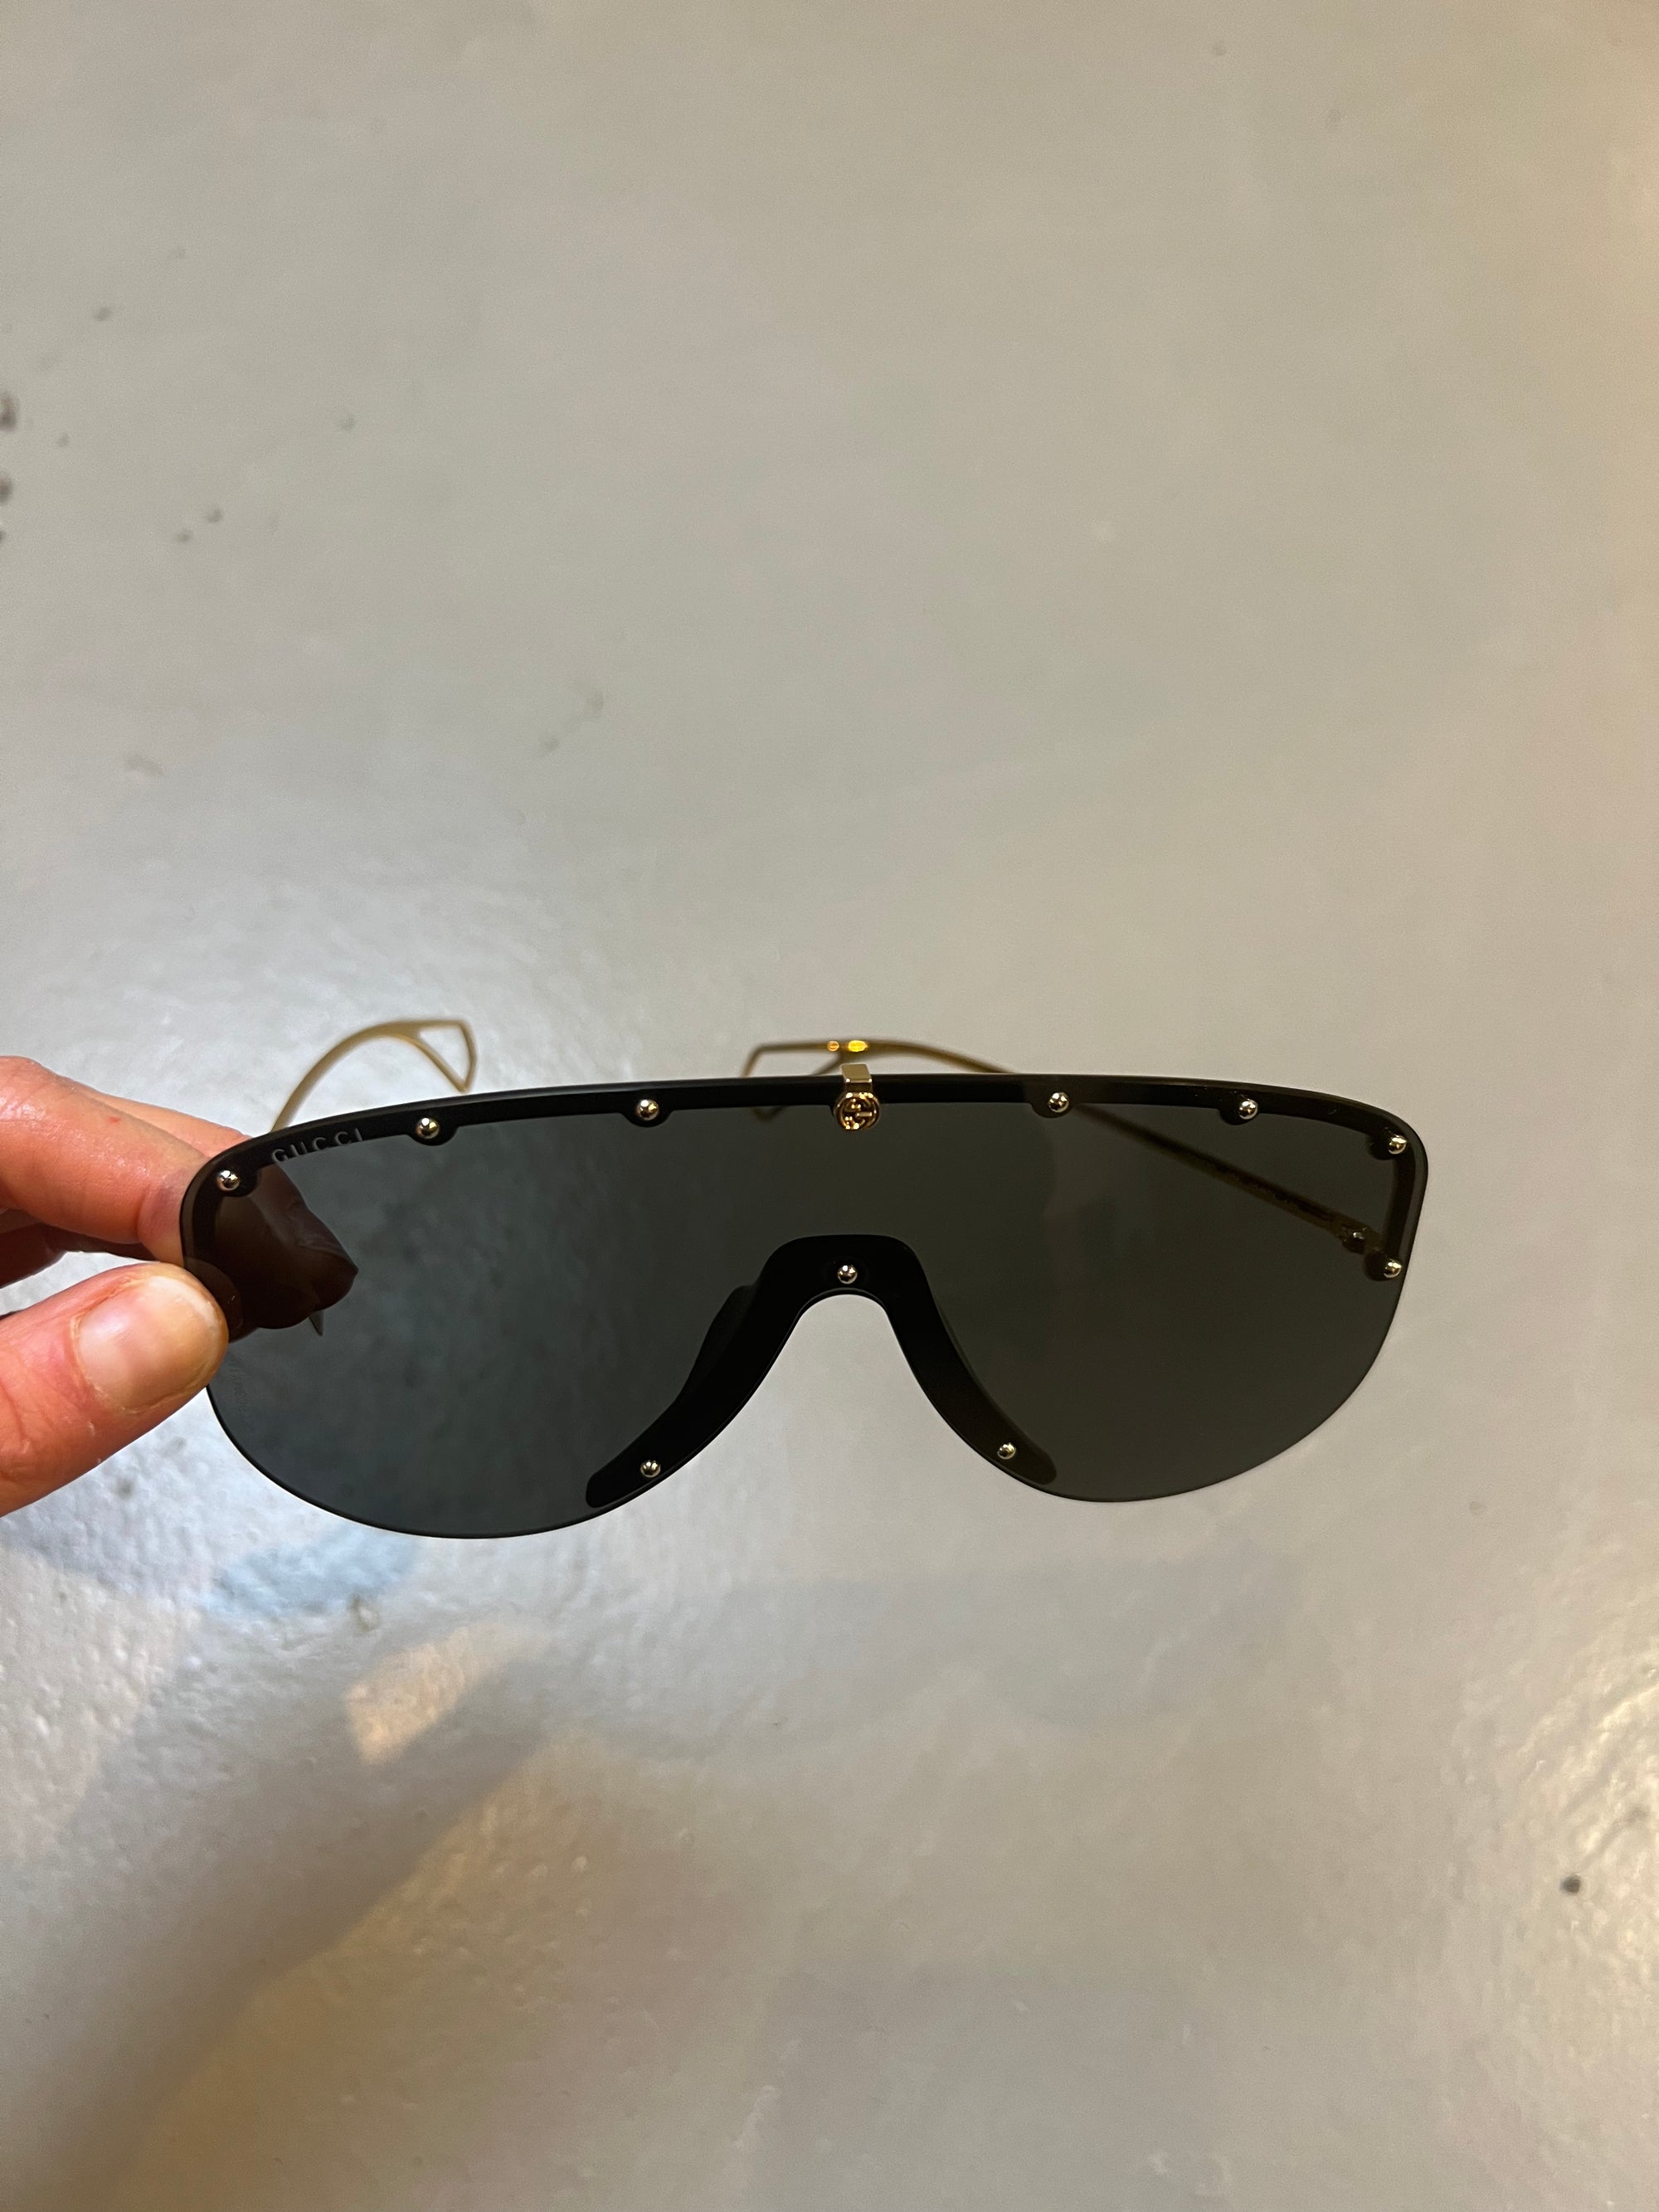 Produktbild von Gucci Sunglasses Big von glässer